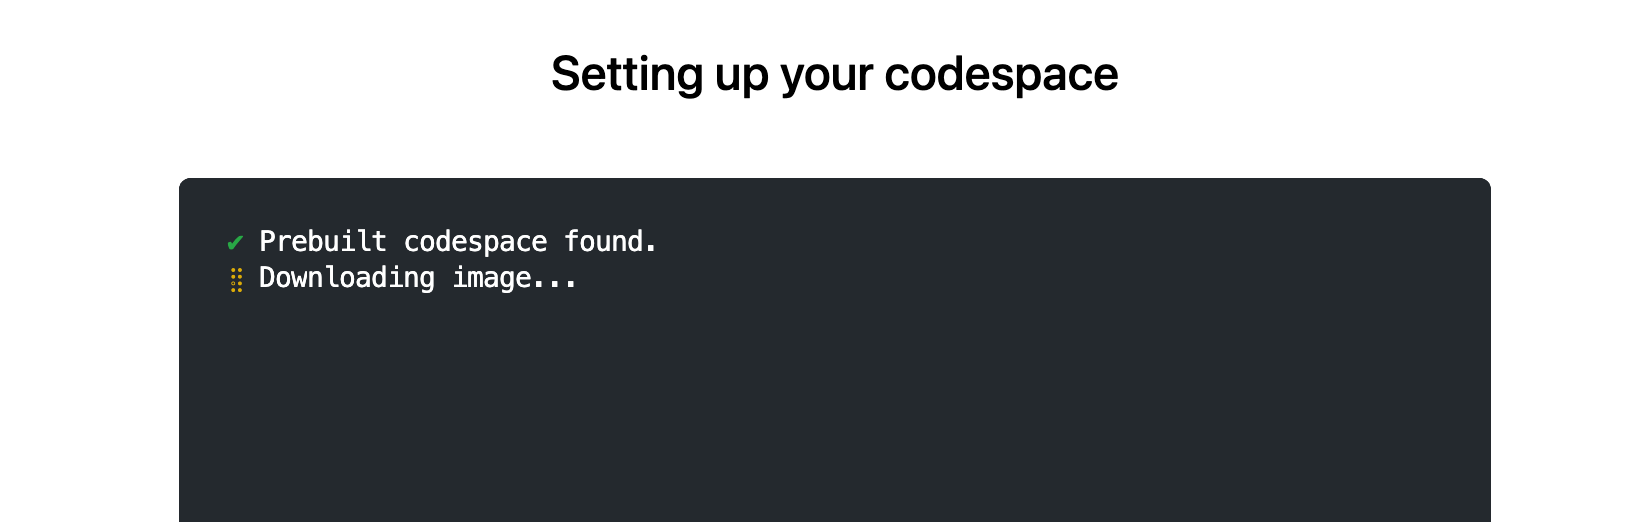 Screenshot der Seite „Einrichten deines Codespace“ mit dem folgenden Text: „Vordefinierter Codespace gefunden. Image wird heruntergeladen.“